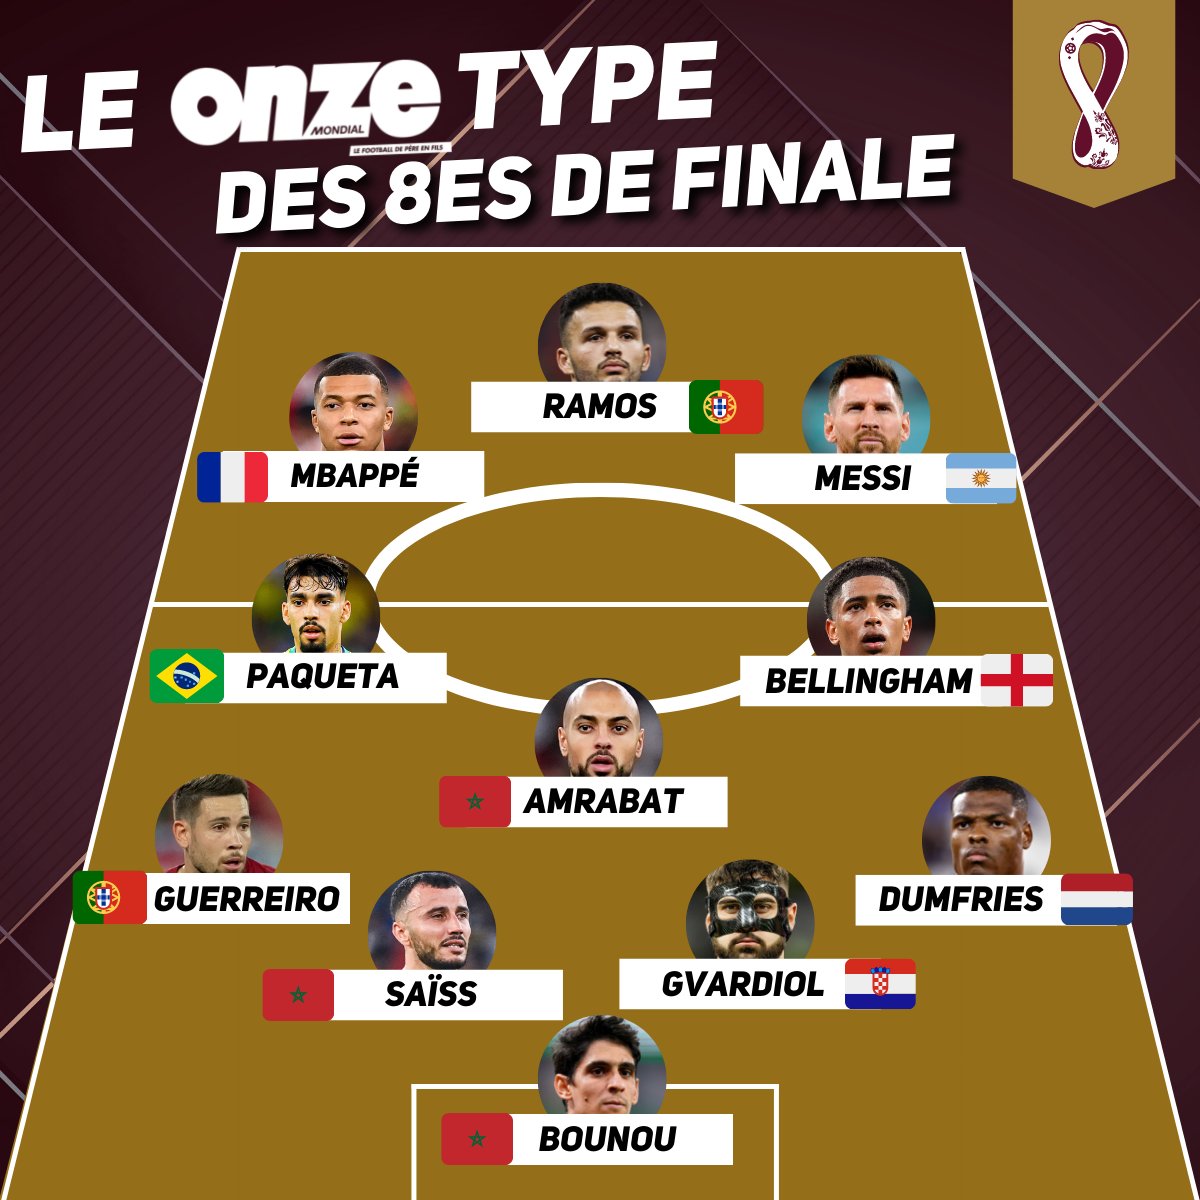 مجلة فرنسية تضع 3 لاعبين مغاربة في التشكيلة المثالية لثمن نهائي كأس العالم